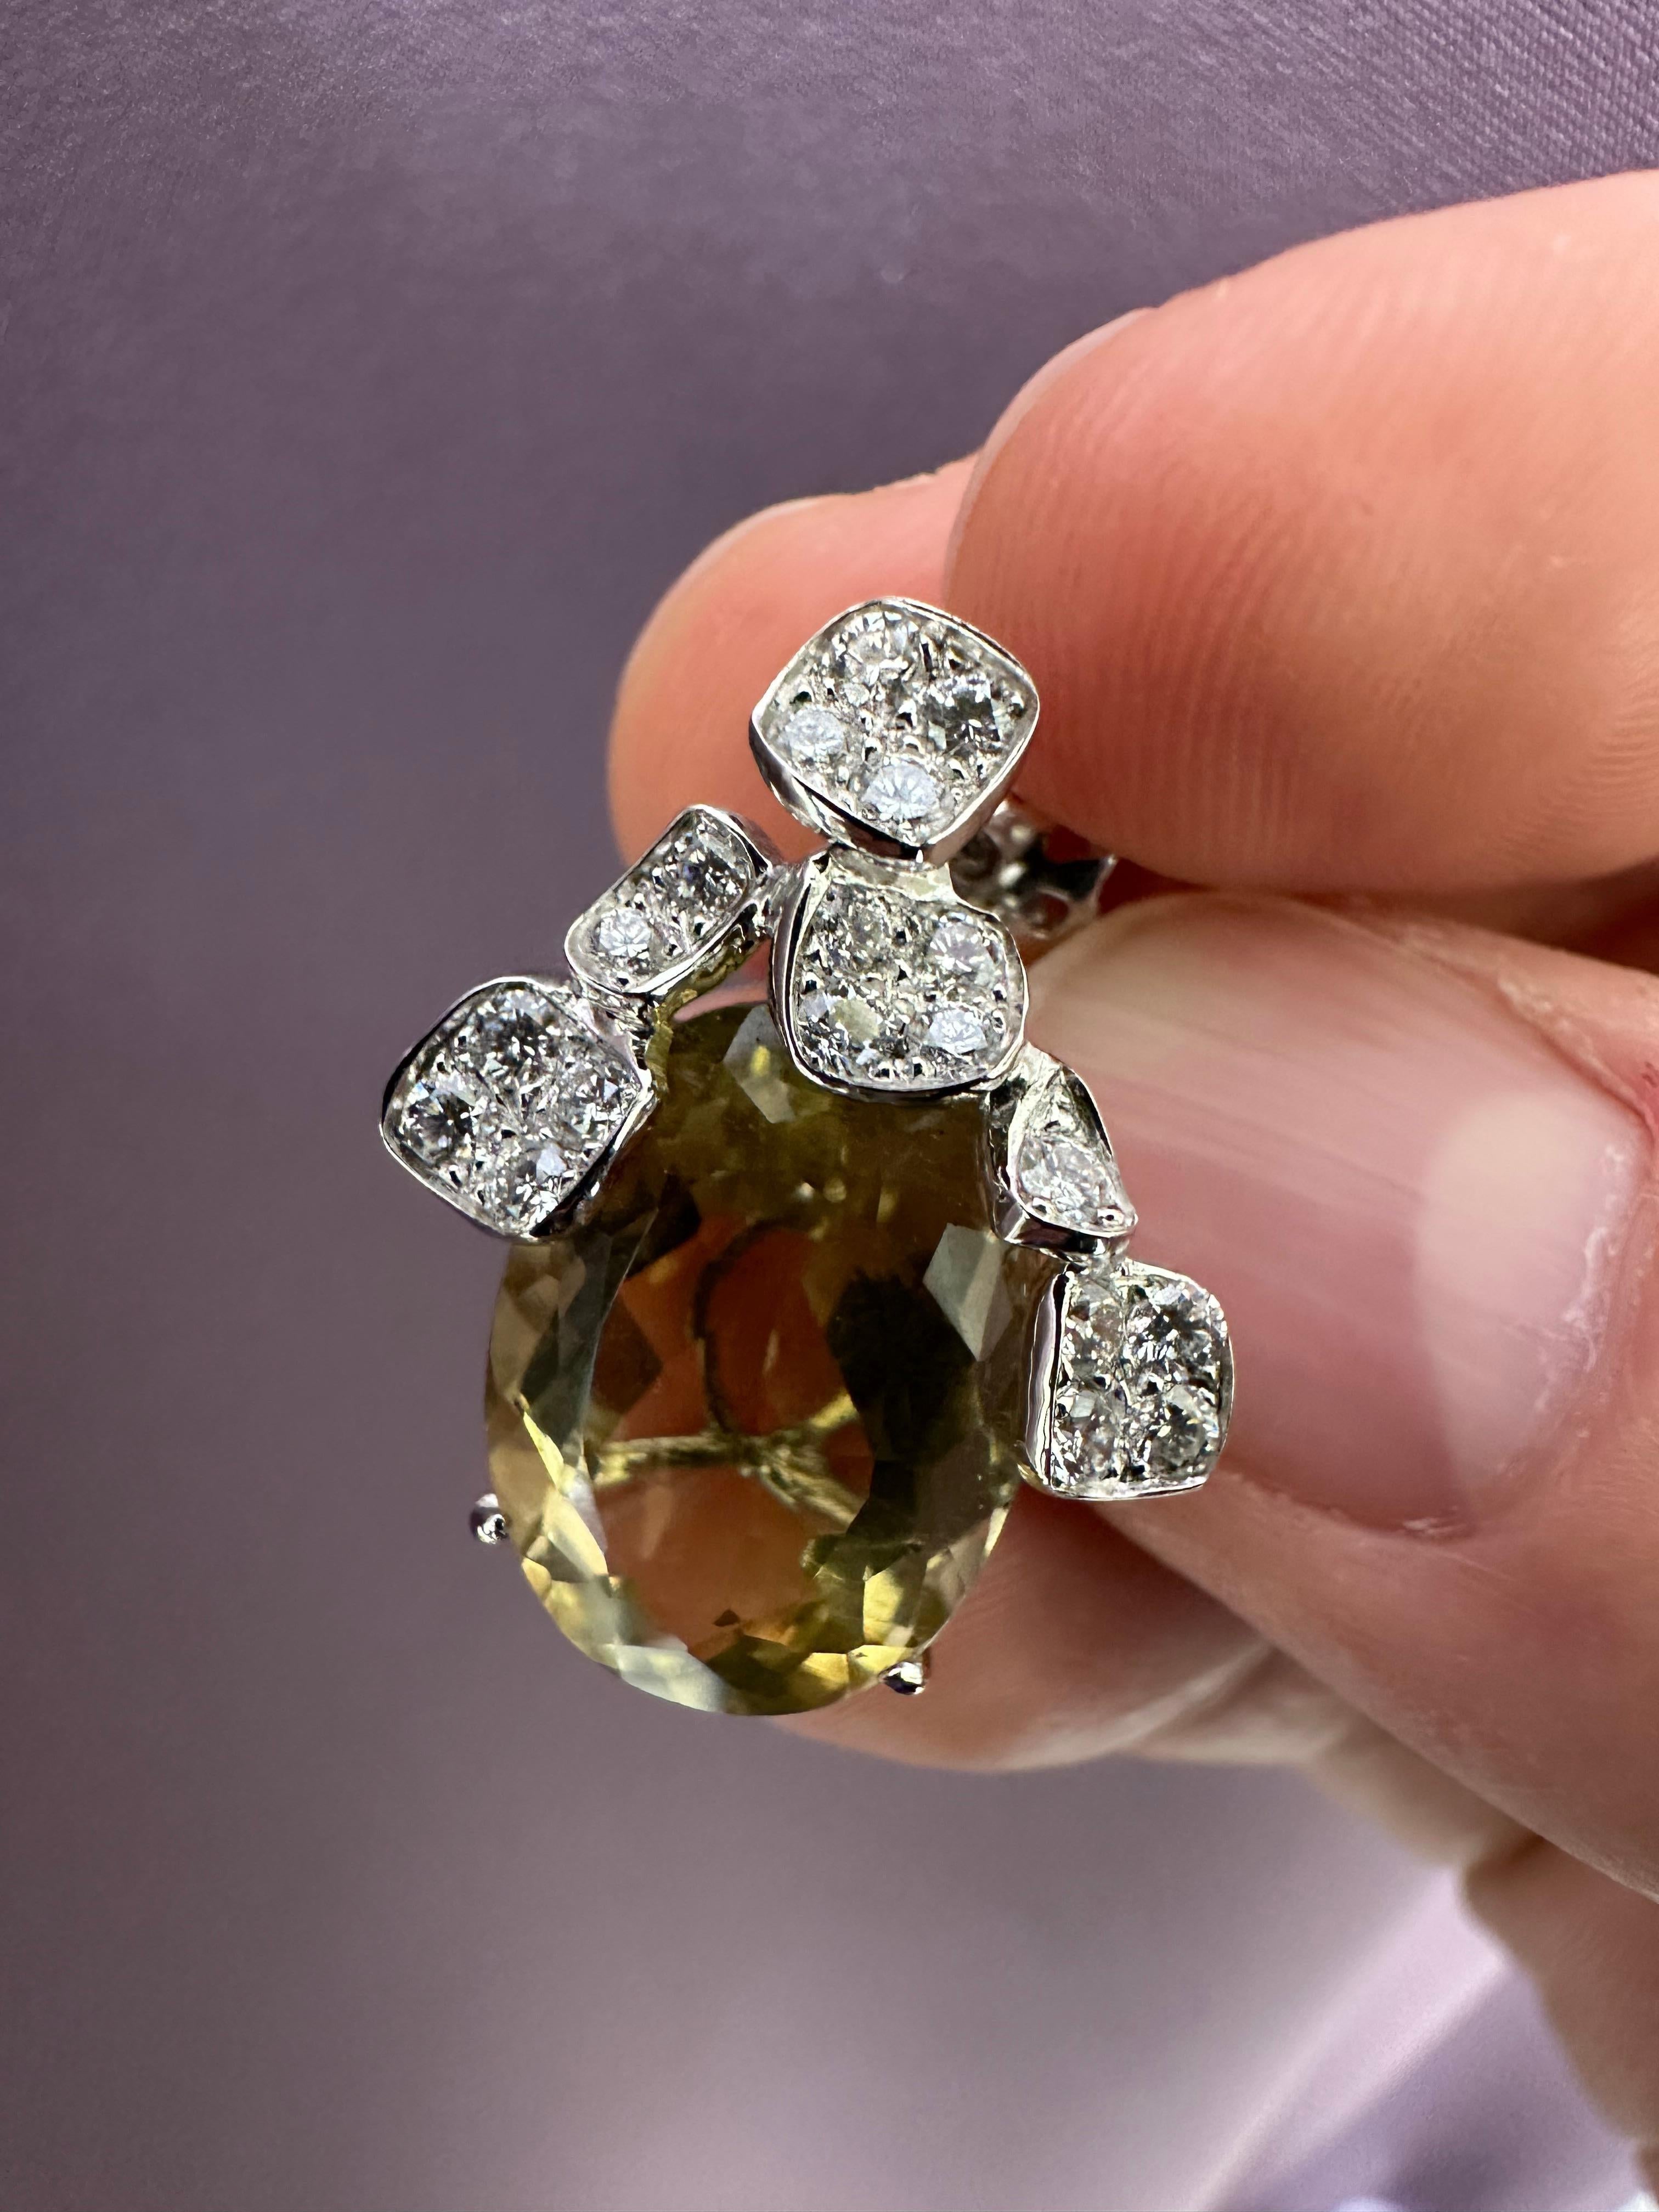 Boucles d'oreilles pendantes en or blanc 19.2k serties de :
- 2 Quartz jaune taille ovale pesant 2,12 ct ;
- 38 diamants G-VVS pesant 1,12 ct.
Poids en or 19,2K :  6,10 g.
Pièce unique.
Cette pièce unique est accompagnée d'un certificat